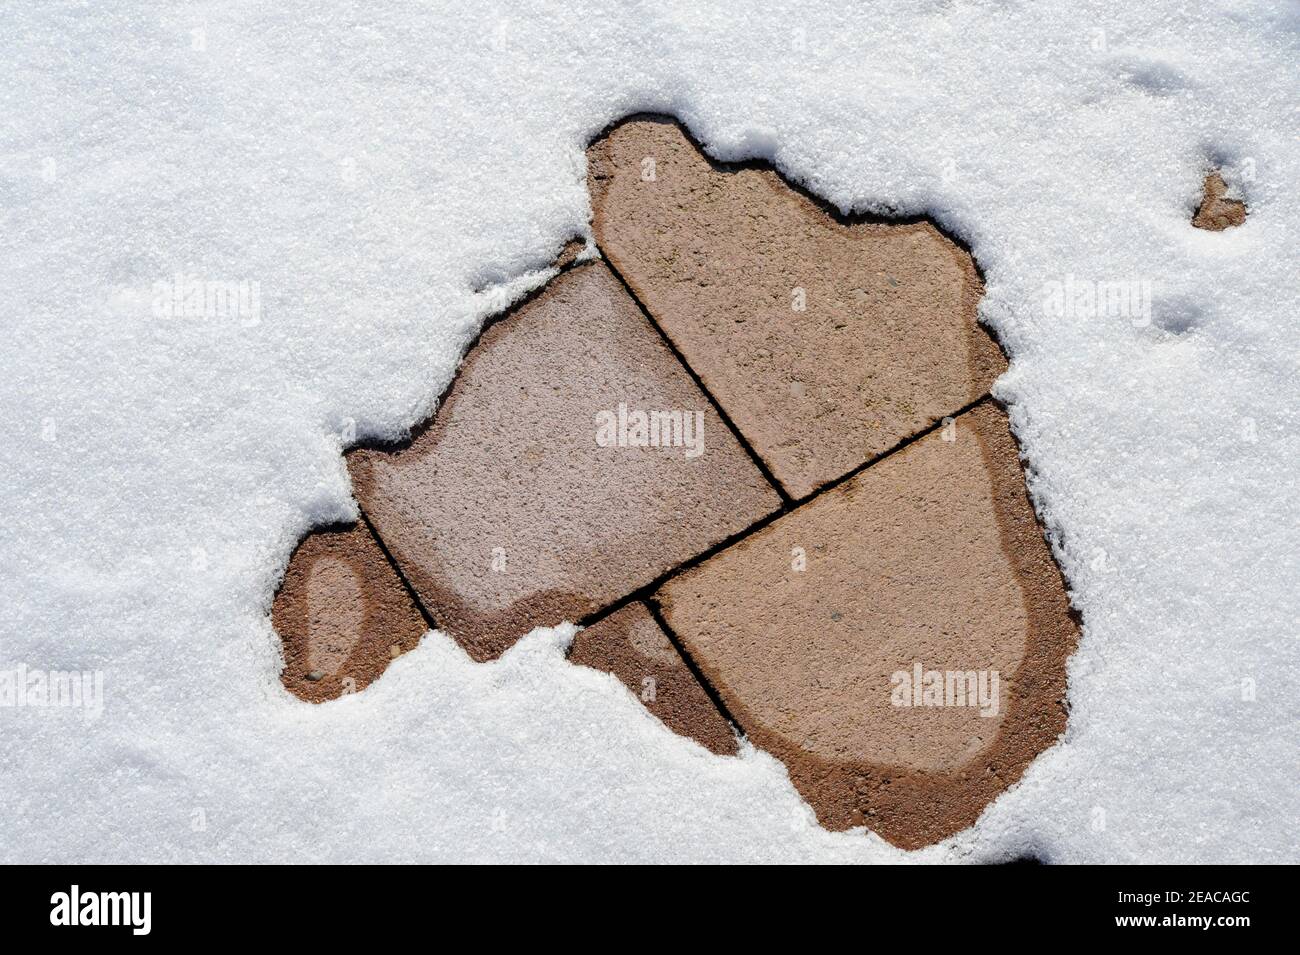 La neige fond sur des dalles de pierre Banque D'Images